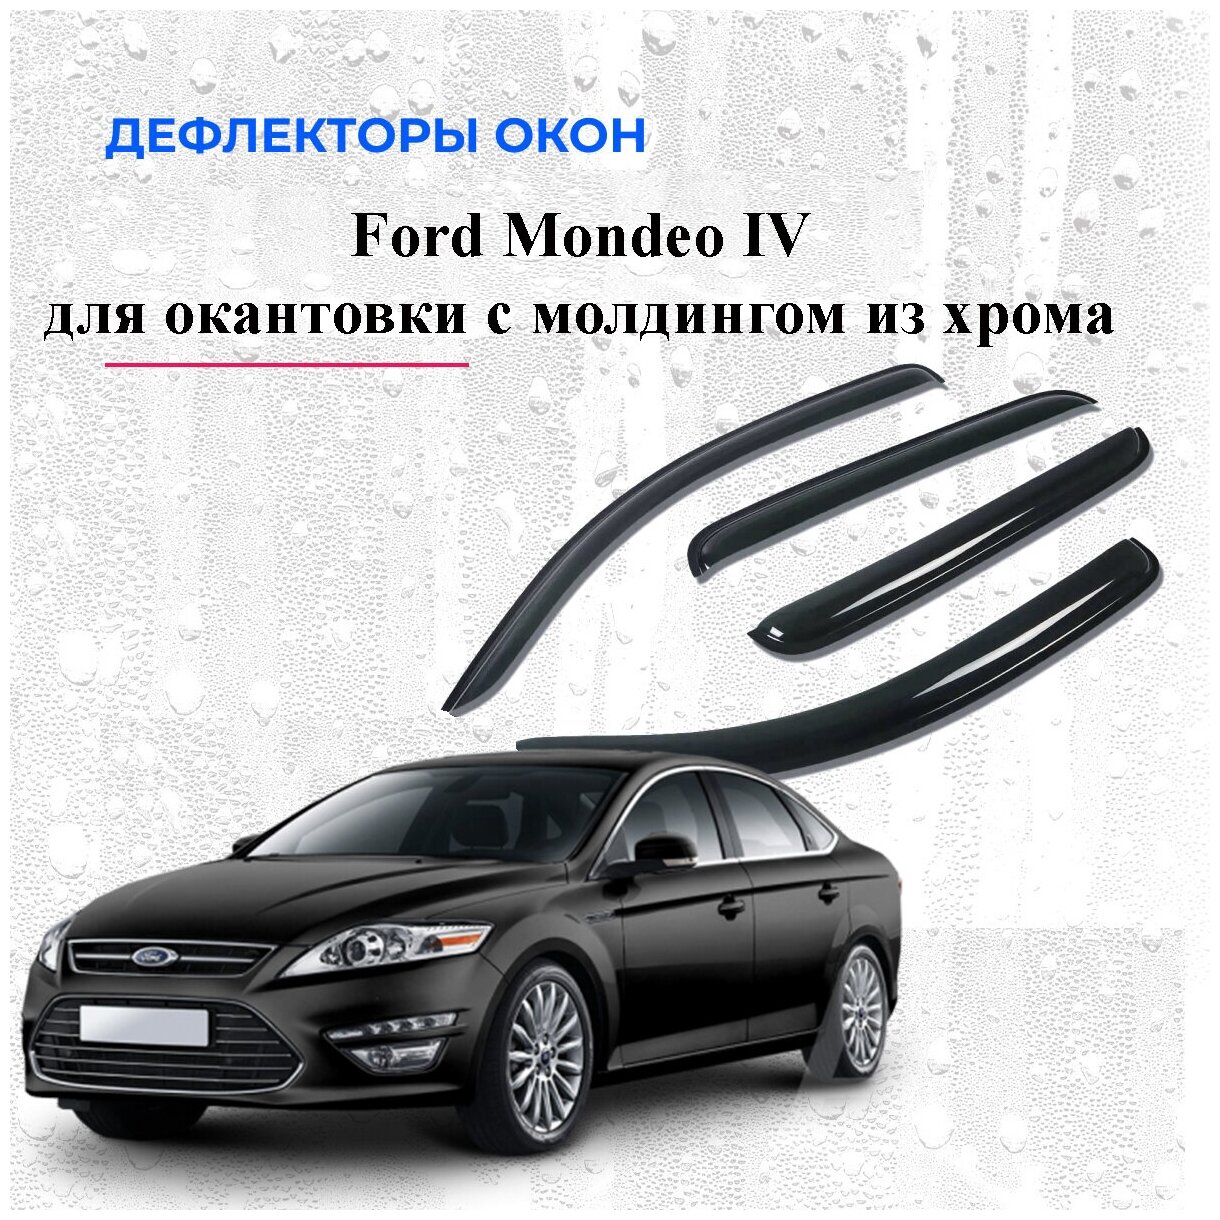 Дефлекторы окон /ветровики/ для Ford Mondeo IV с окантовкой окон с молдингом из хрома 2007-2014 г.